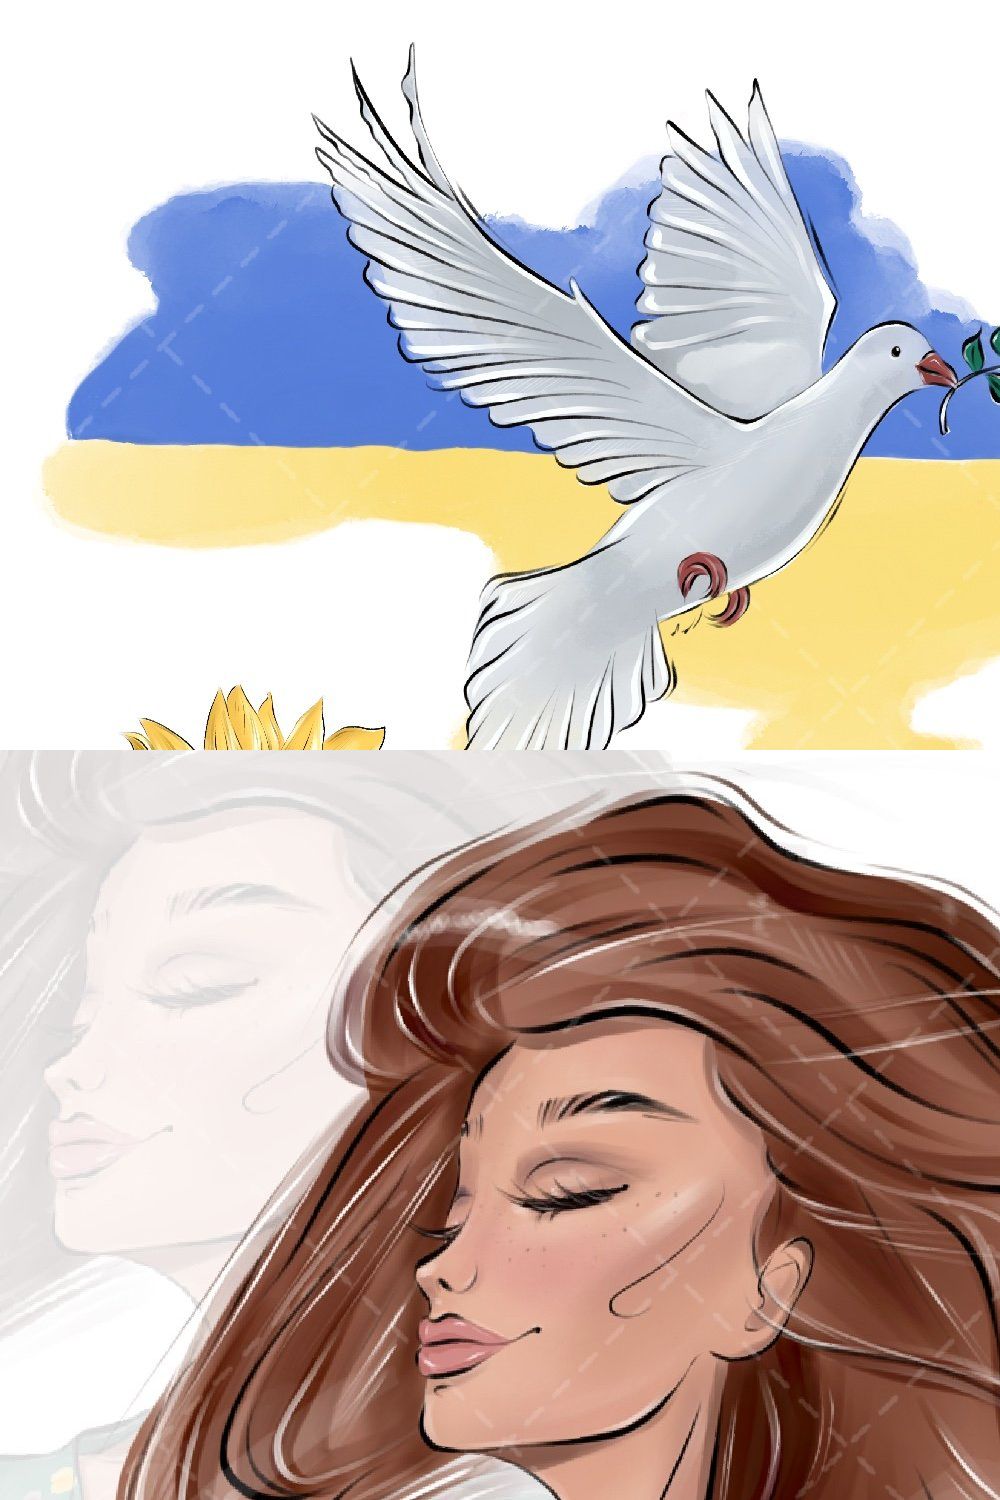 Ukraine Clipart, Ukrainian girl pinterest preview image.